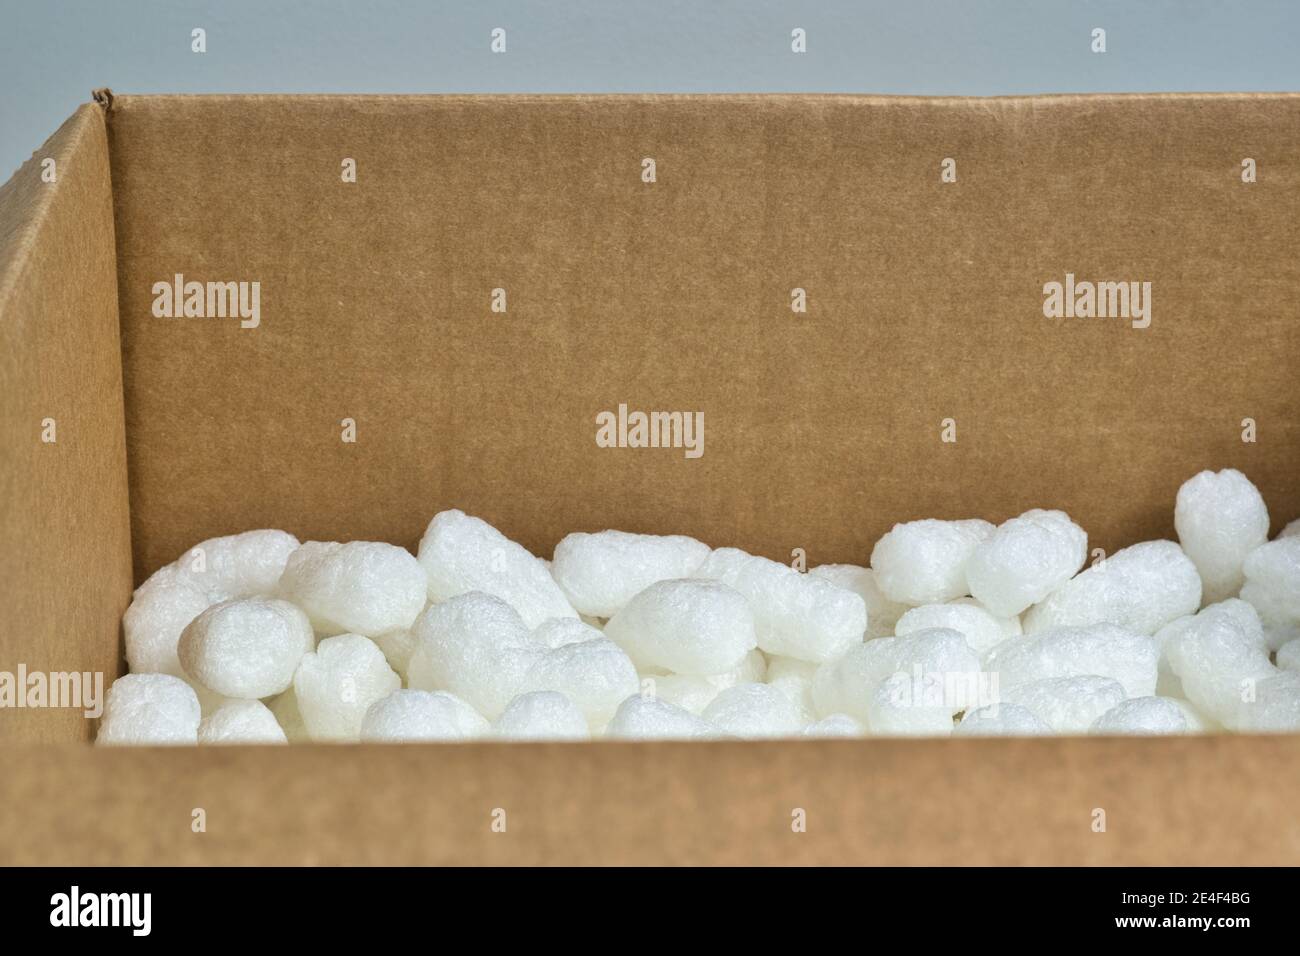 Blanco de embalaje cacahuetes espuma de styrofoam palomitas de maíz material de embalaje dentro de una caja de cartón, ángulo de visión con espacio de copia. Foto de stock